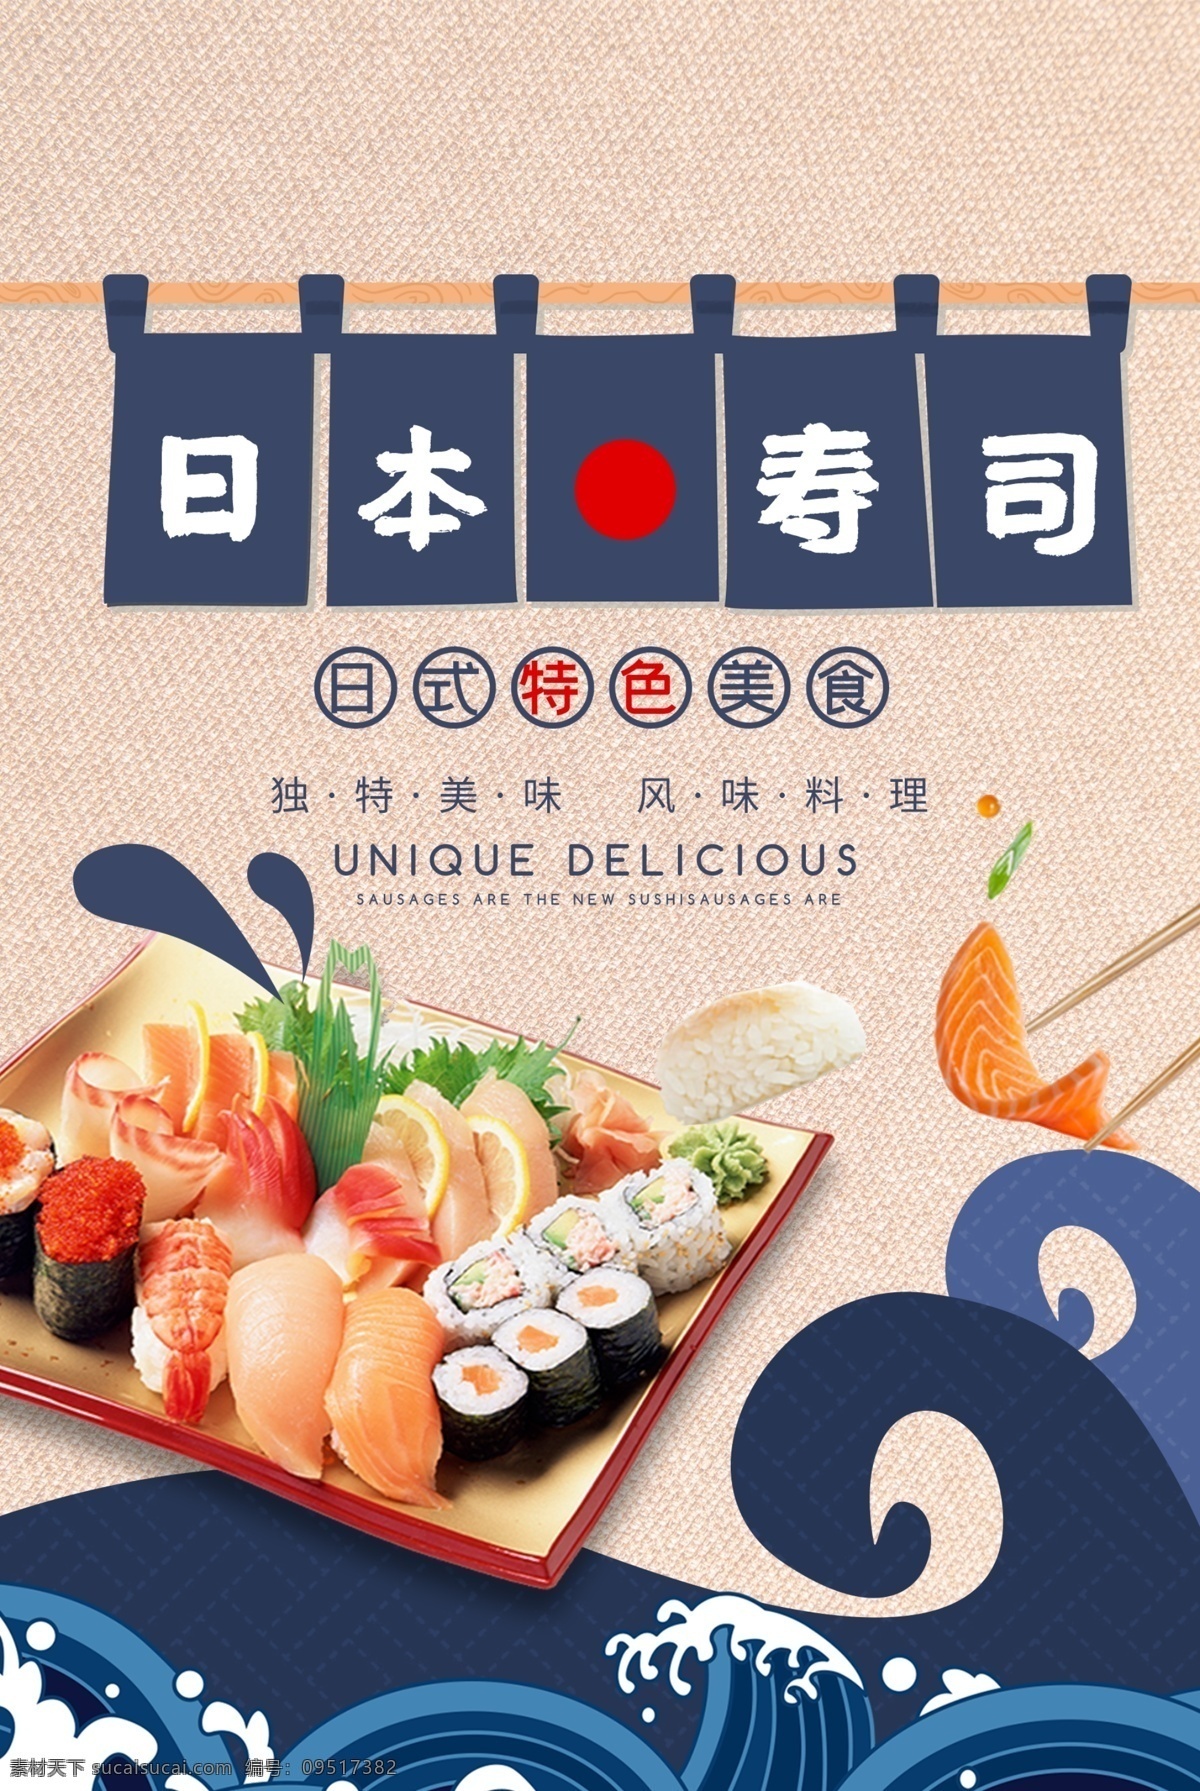 日本料理 寿司 特色 美食 海报 日本 料理